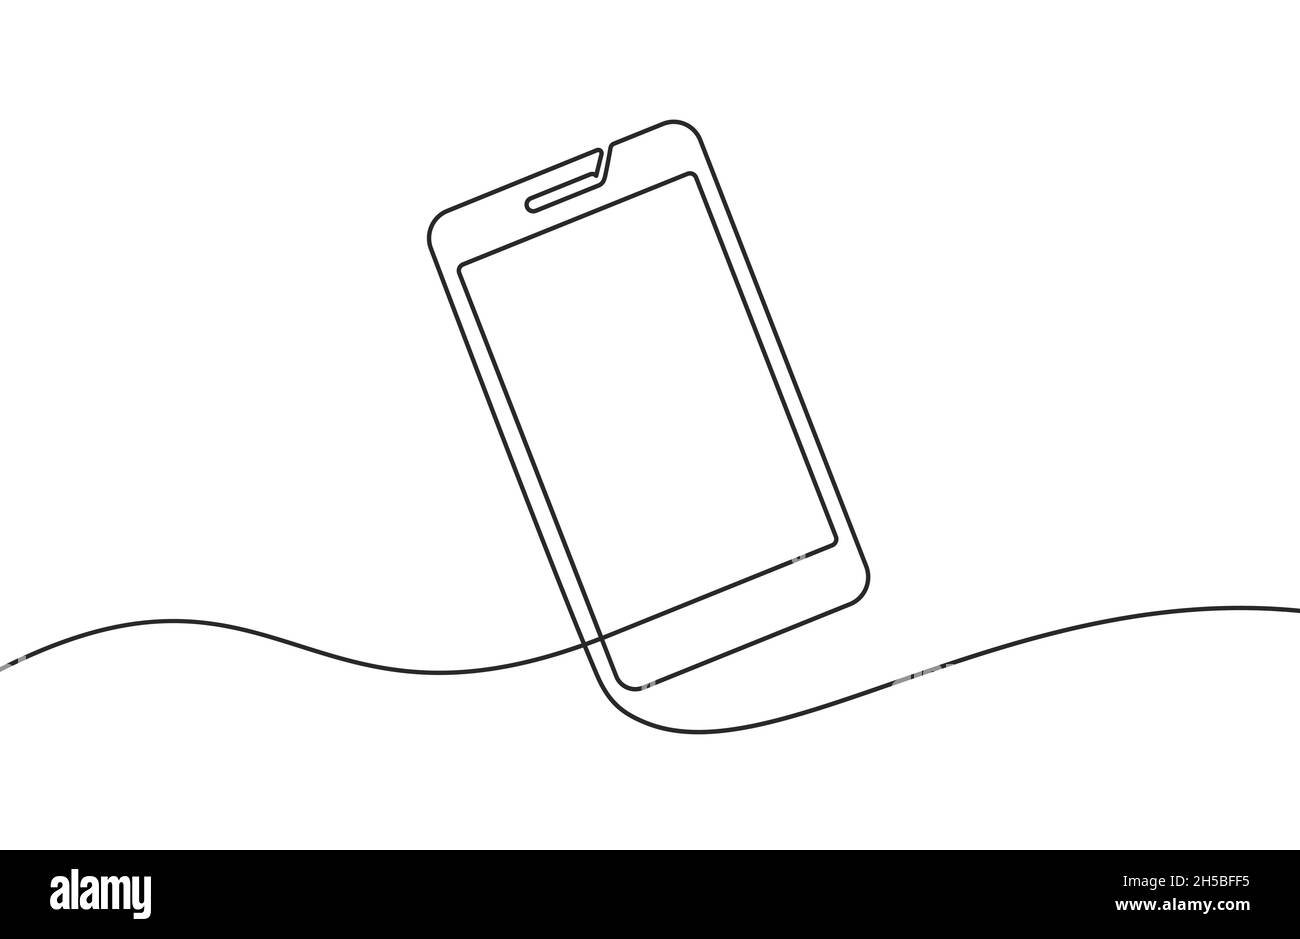 Hintergrund der Telefonleitung. Hintergrund für einzeilige Zeichnung. Kontinuierliche Linienzeichnung des Smartphones. Vektorgrafik. Stock Vektor